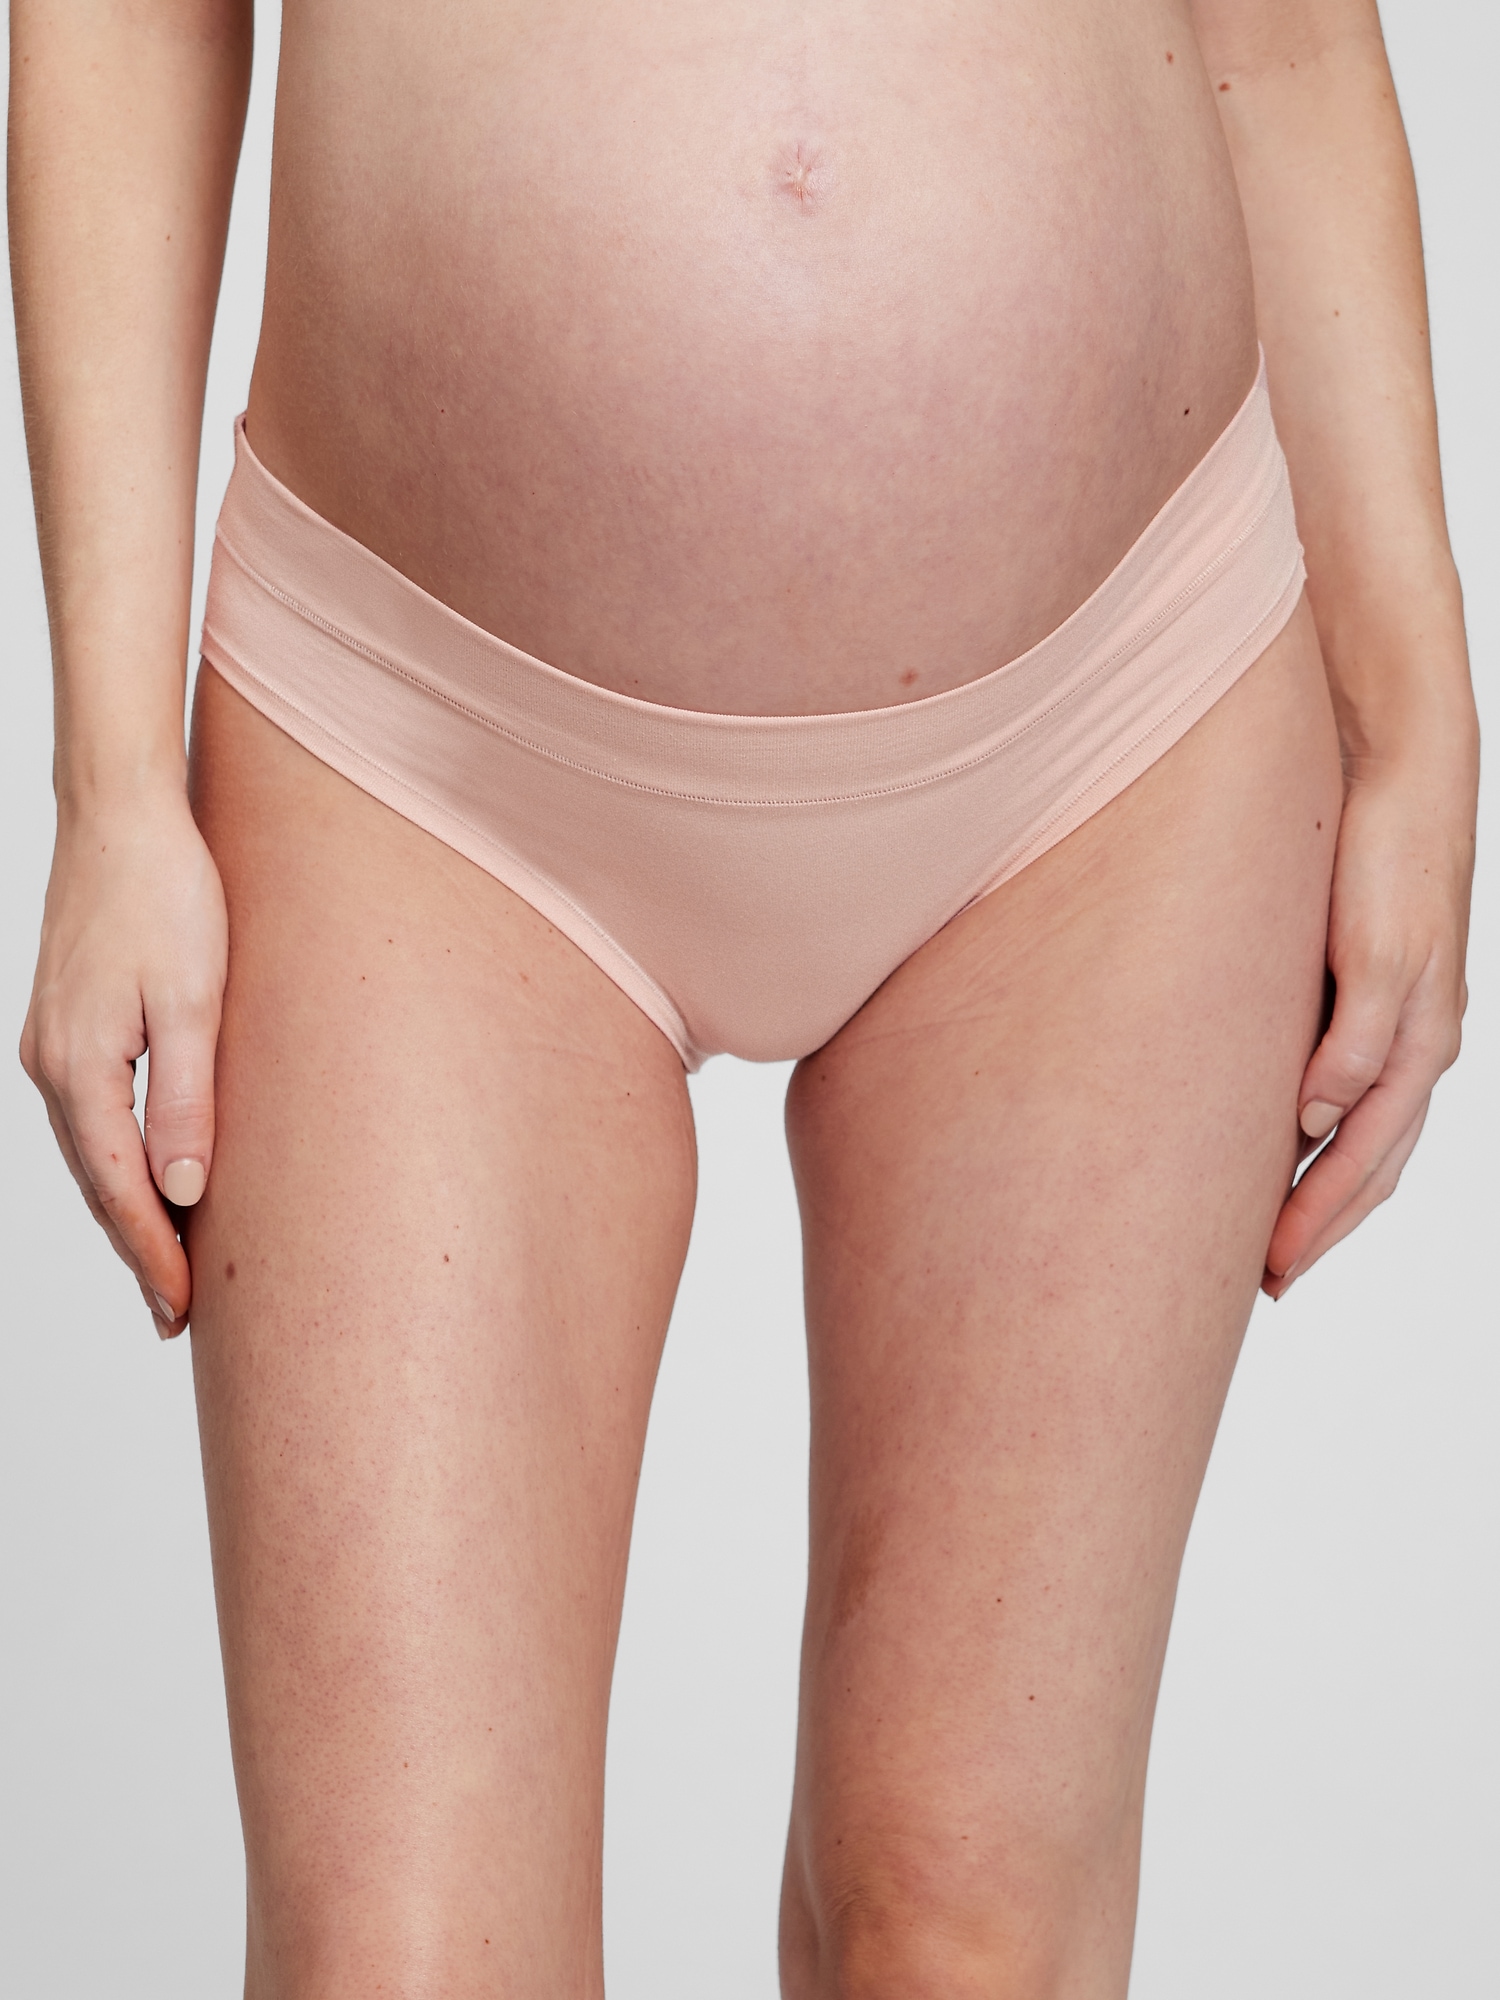 YDKZYMD Womens Underwear Moisture Wicking Pregnancy Low Rise Stretchy 100%  Cotton Maternity Bikini Panty 3 Pack M-2XL 